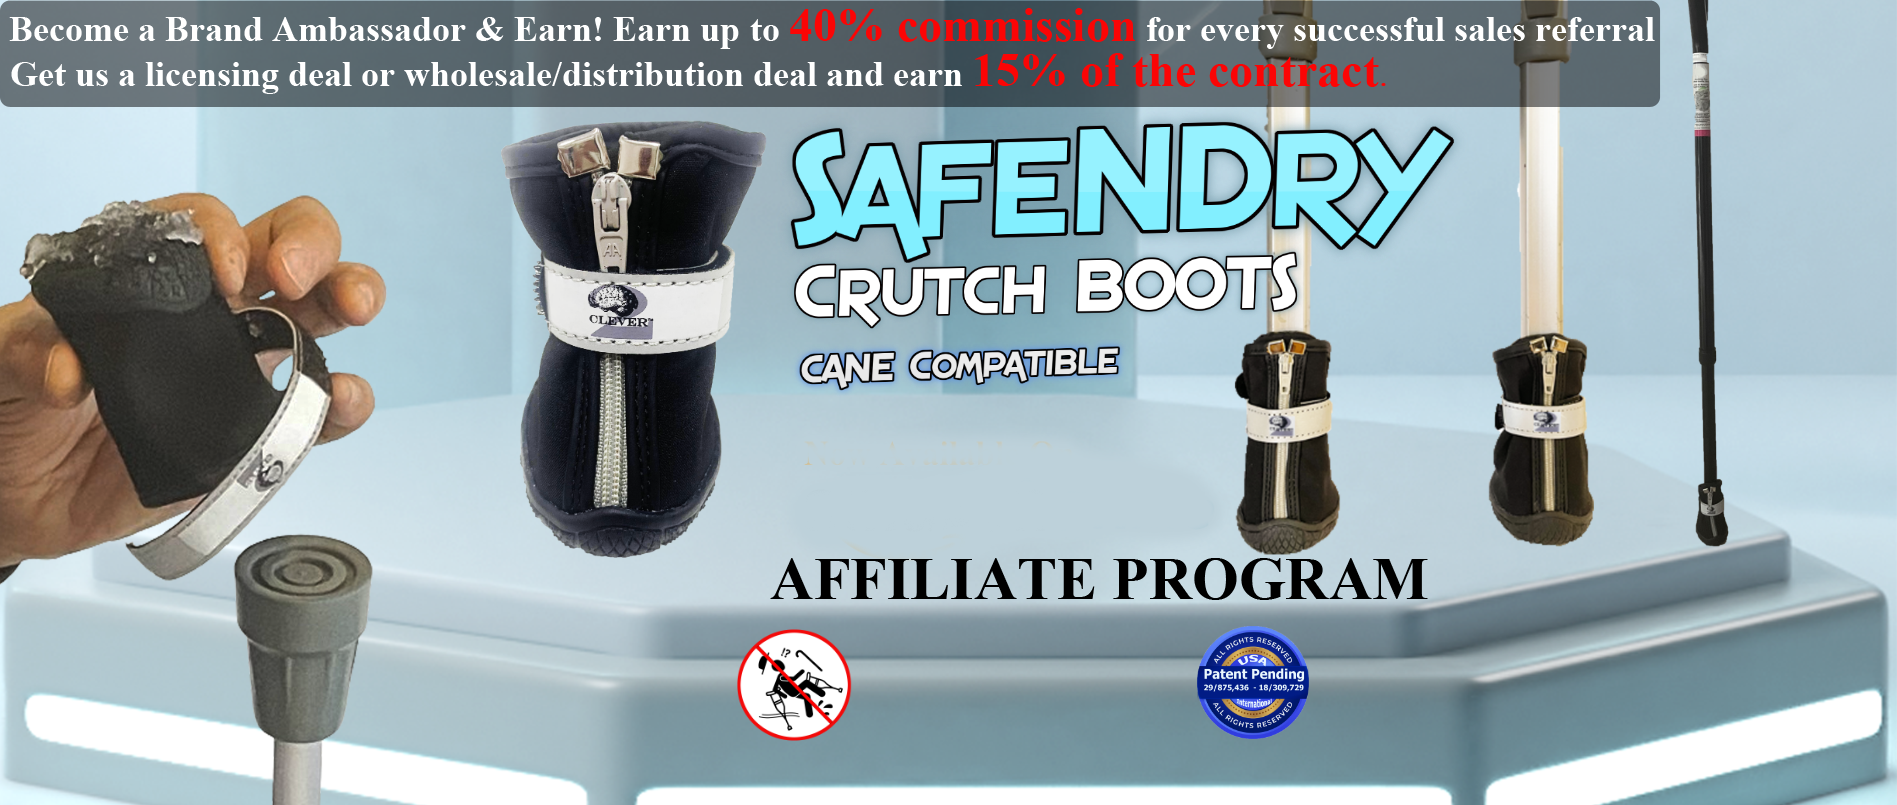 Crutch Accessories - SafeNDry Crutch BOOTS Affiliate program